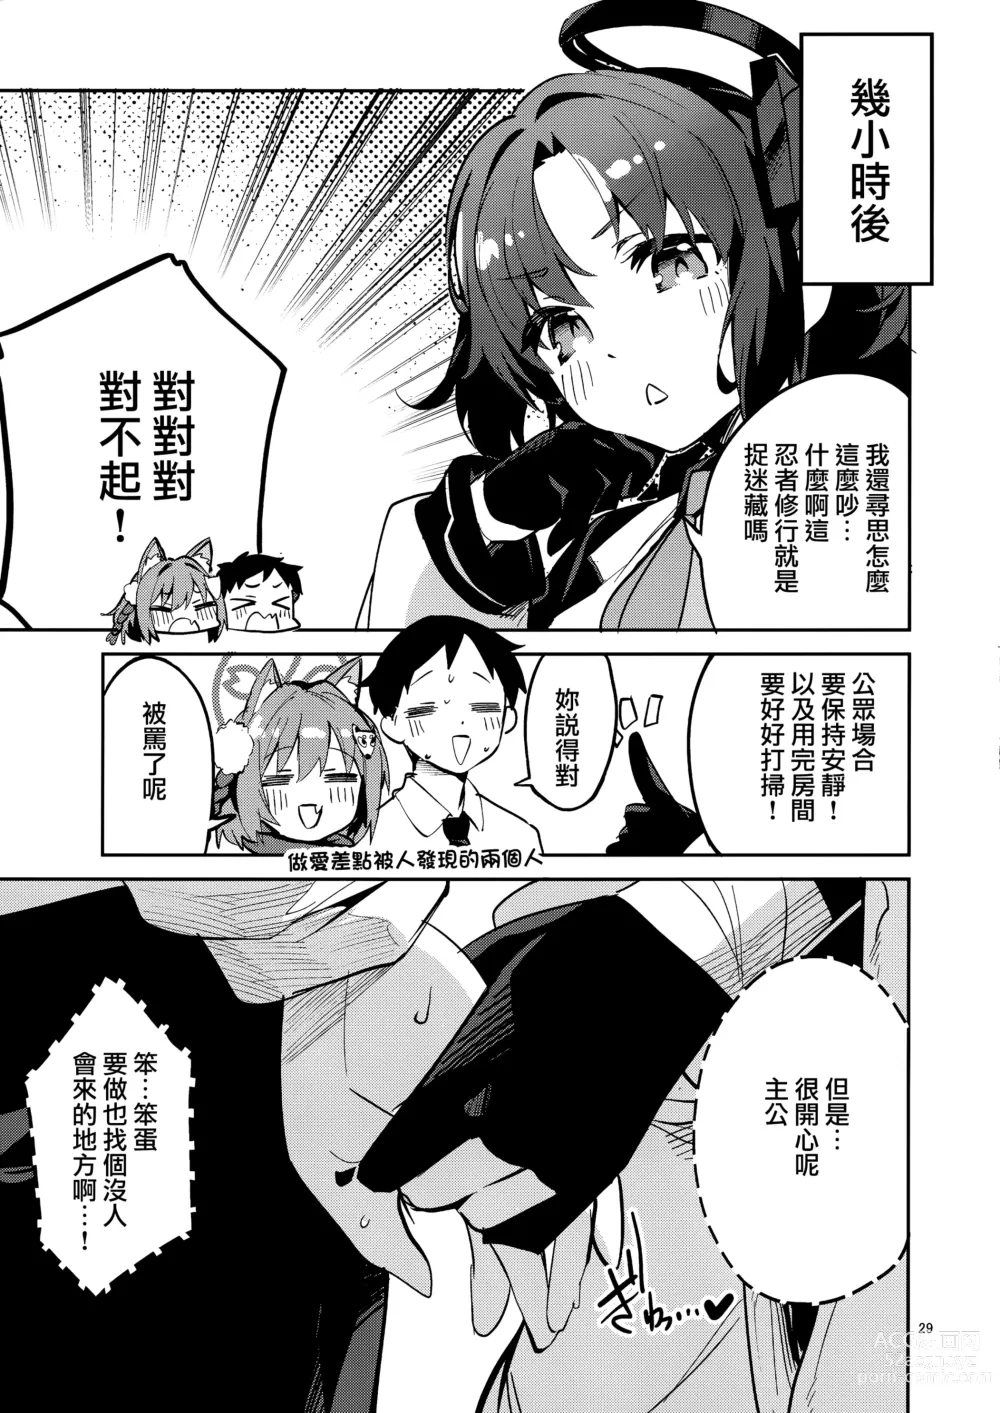 Page 29 of doujinshi Me o Hanasenai Seito